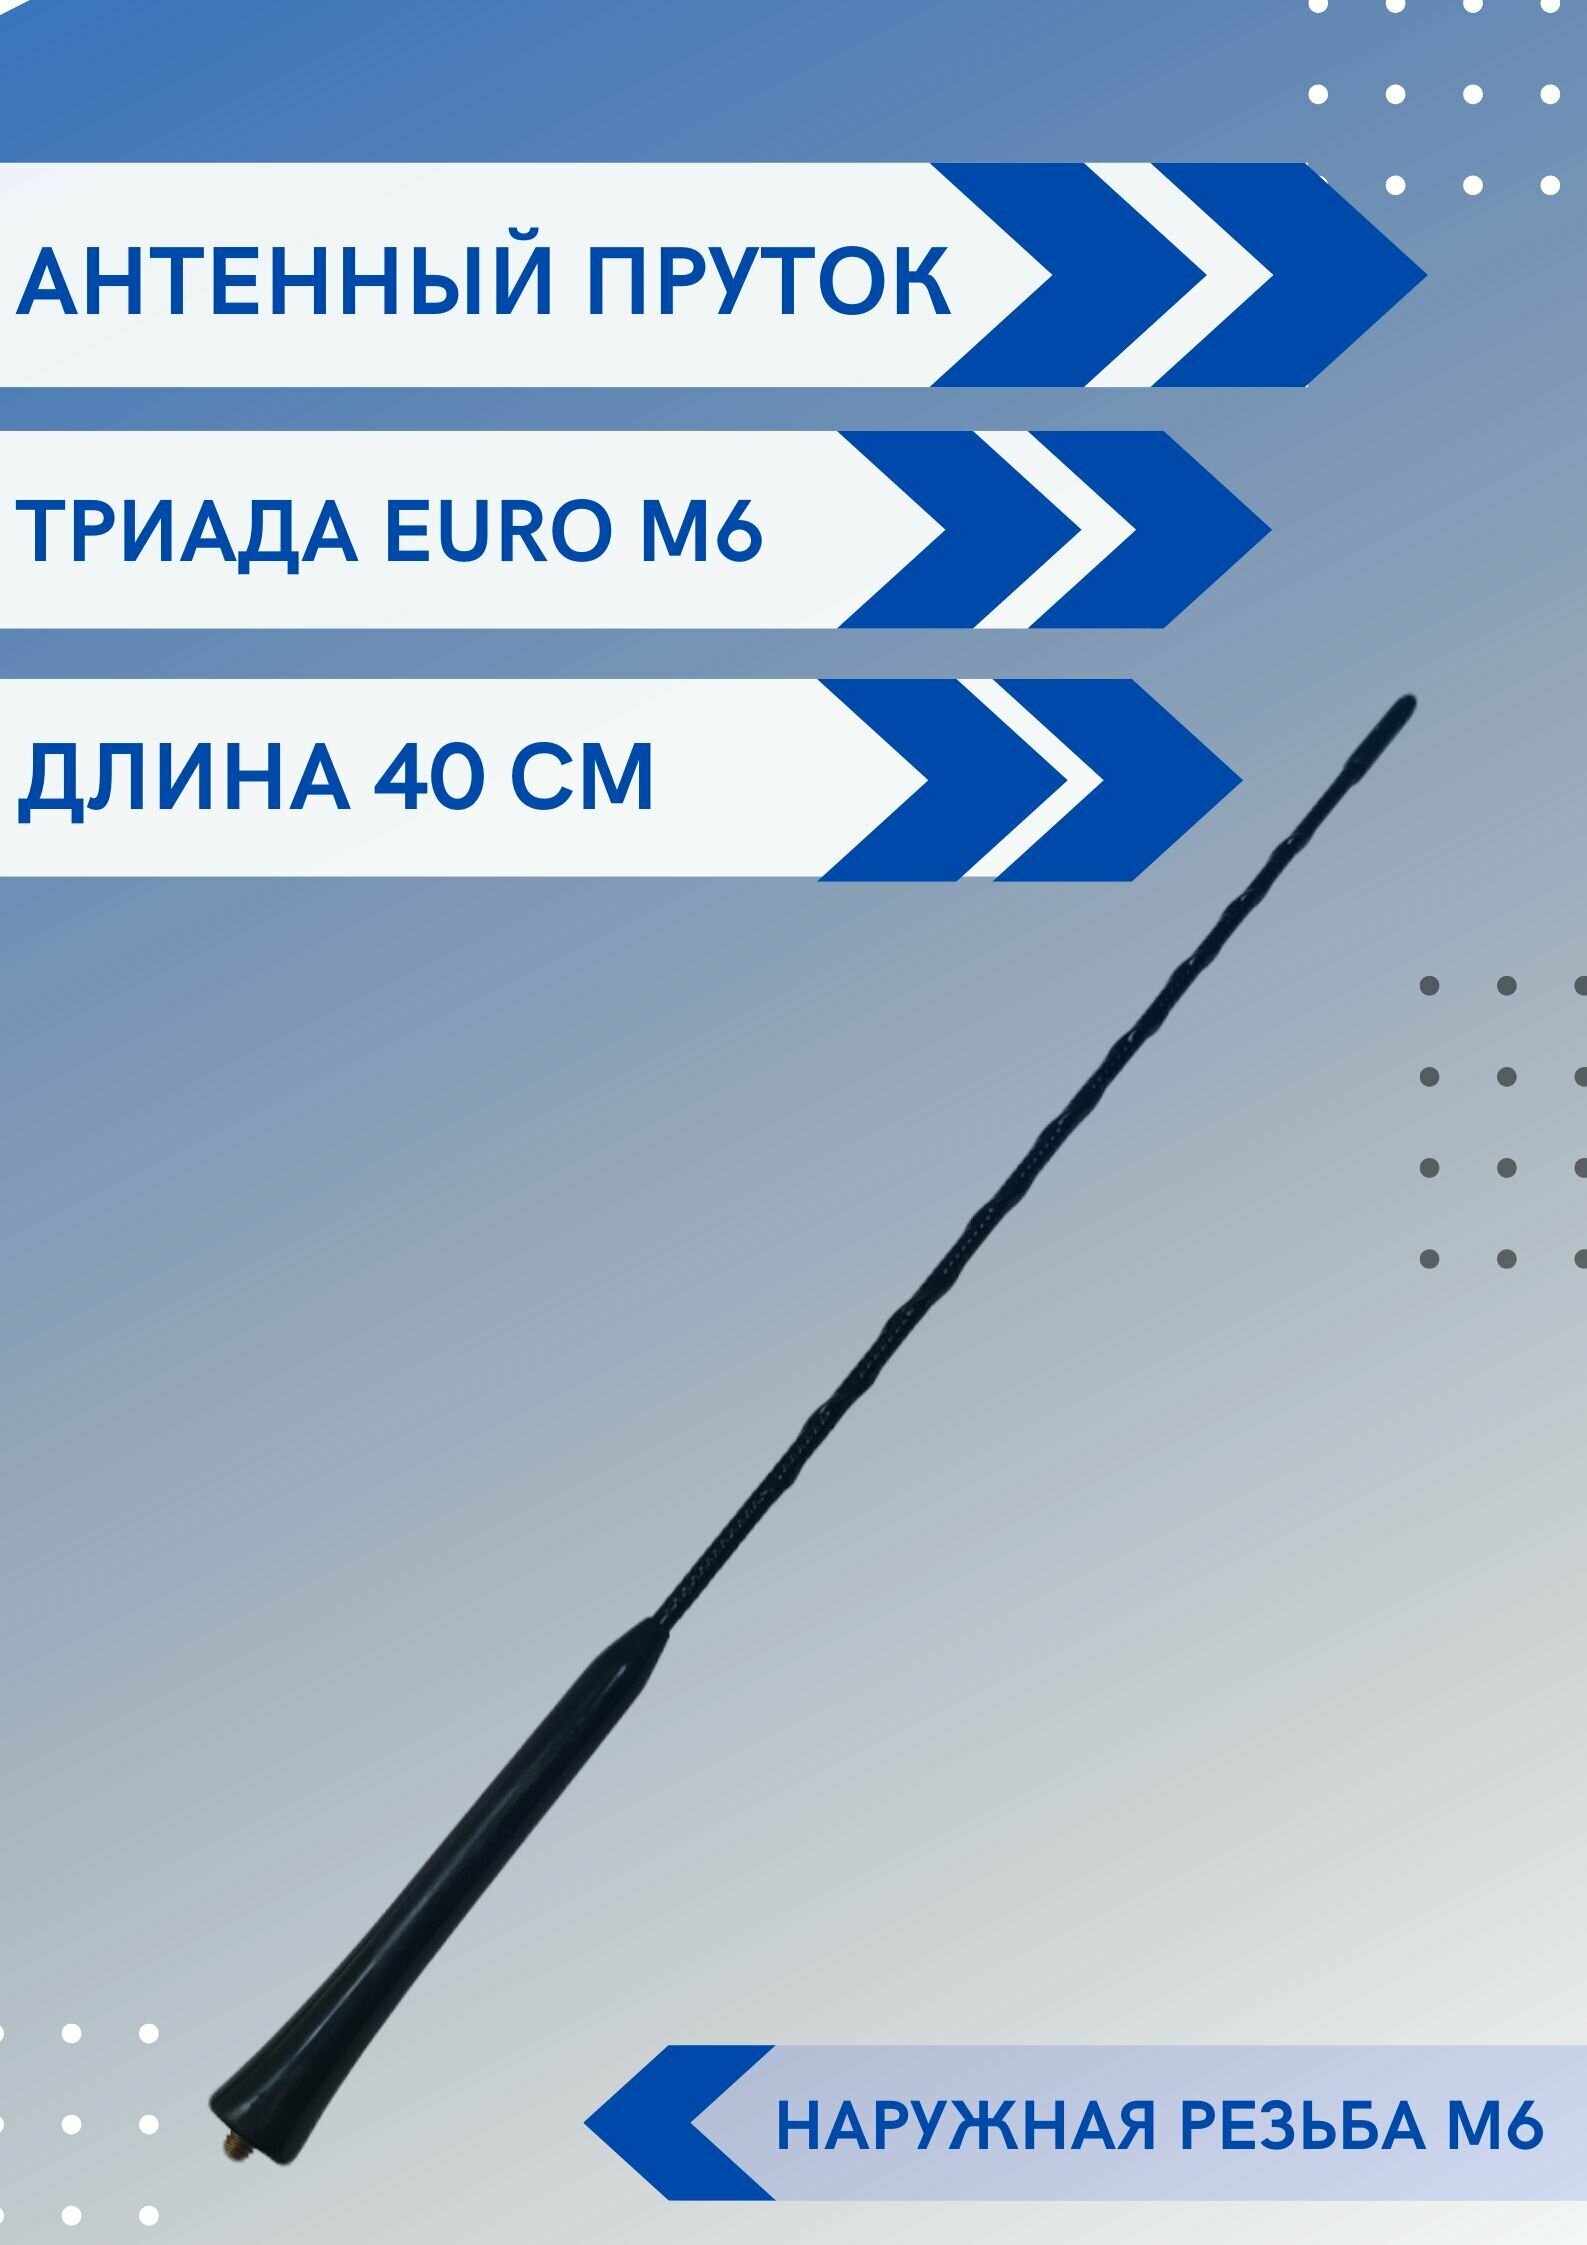 Ремкомплект EURO M5/antenna. ru - пруток универсальный с наружной резьбой М5